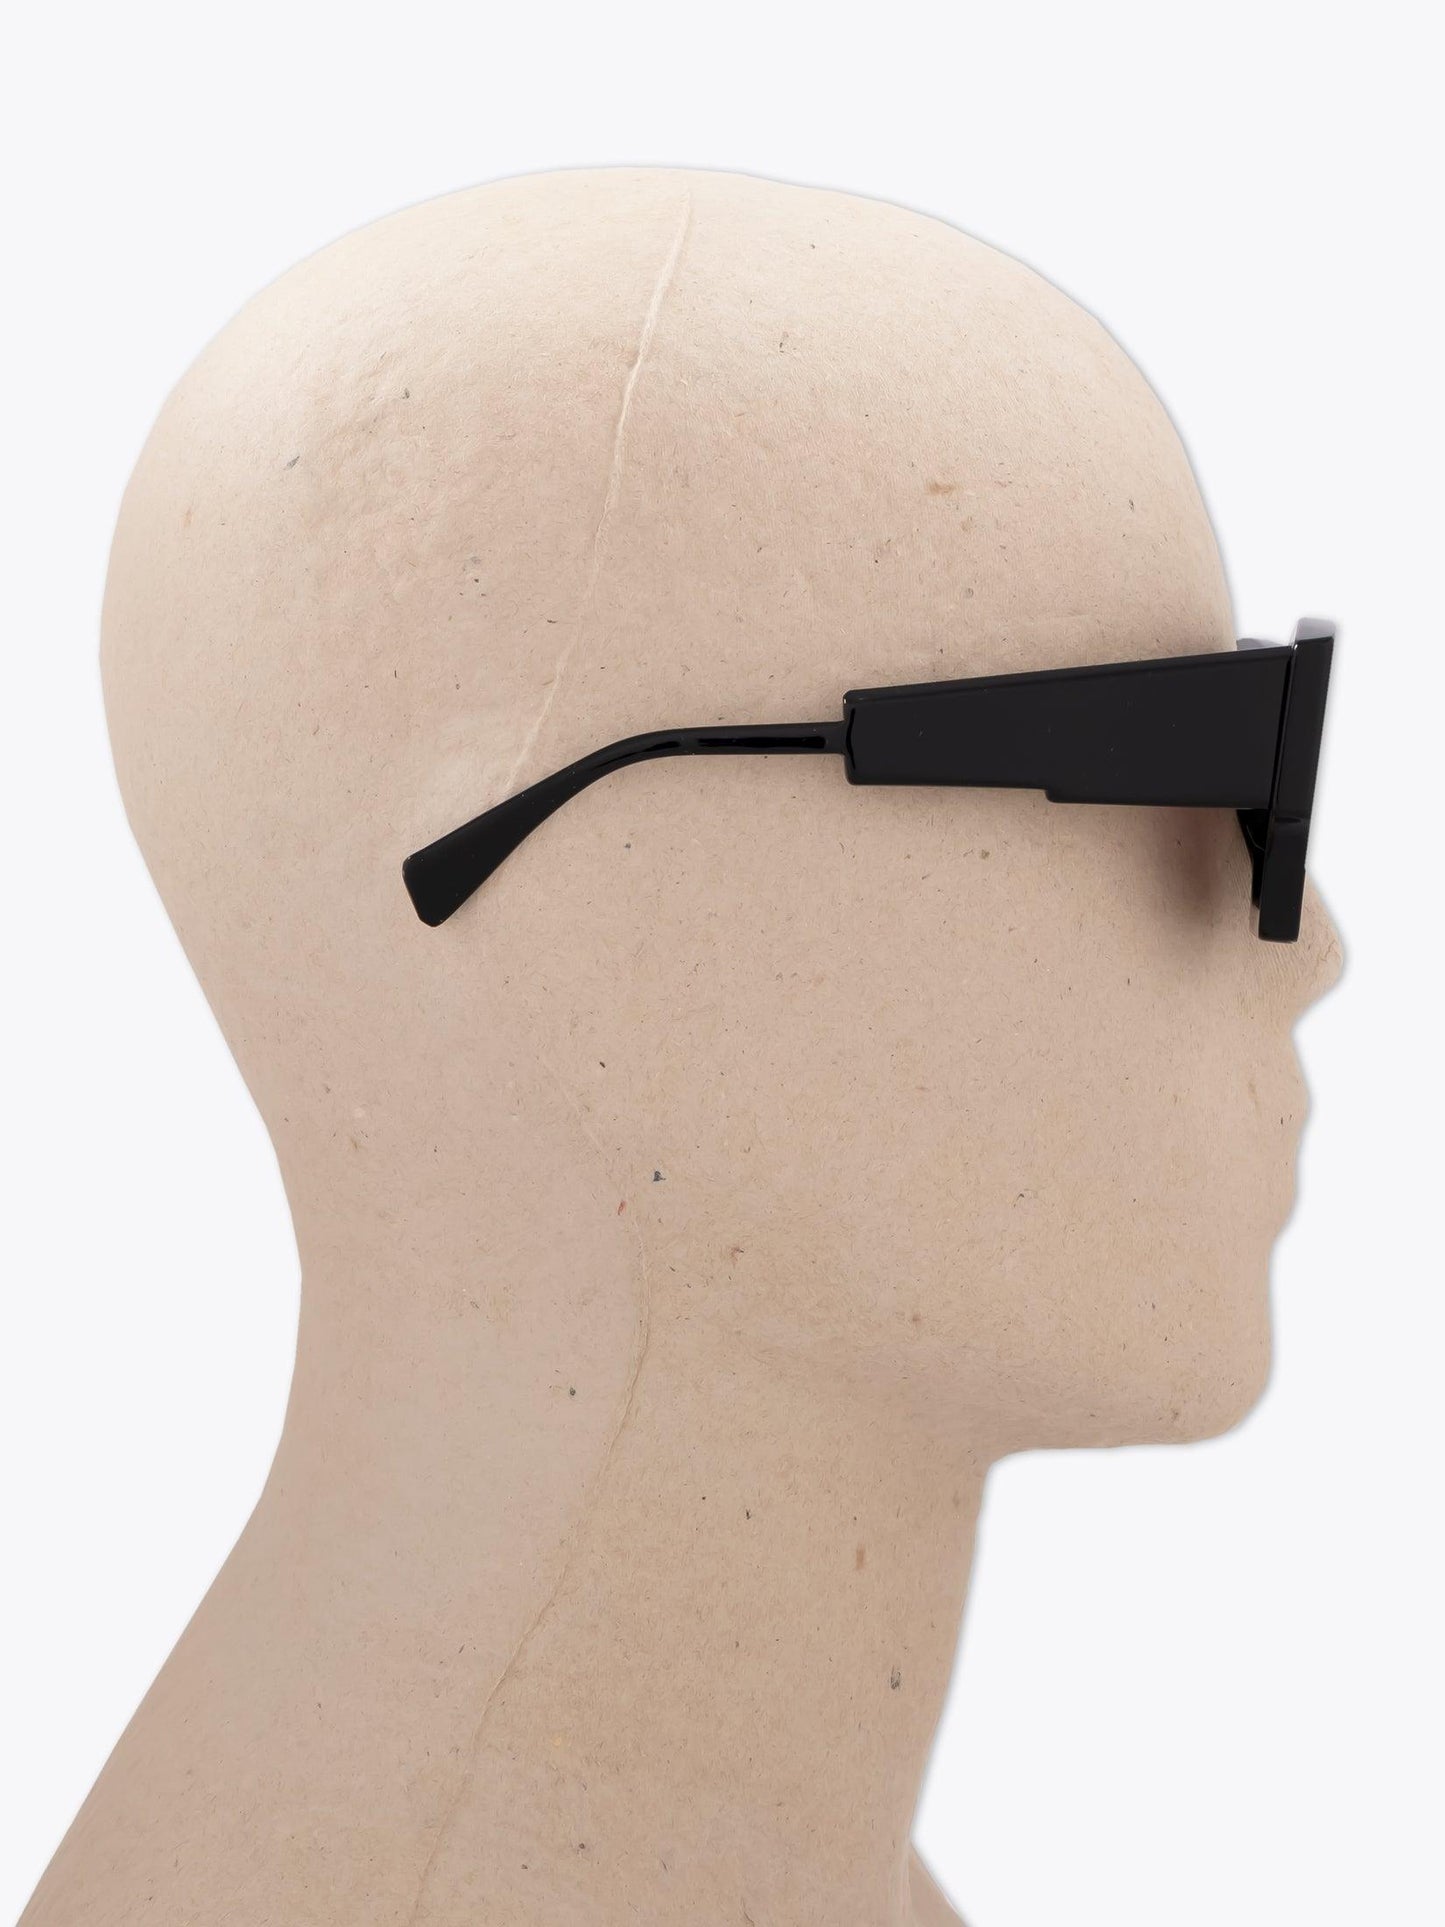 Kuboraum Mask X6 Black Sunglasses - APODEP.com